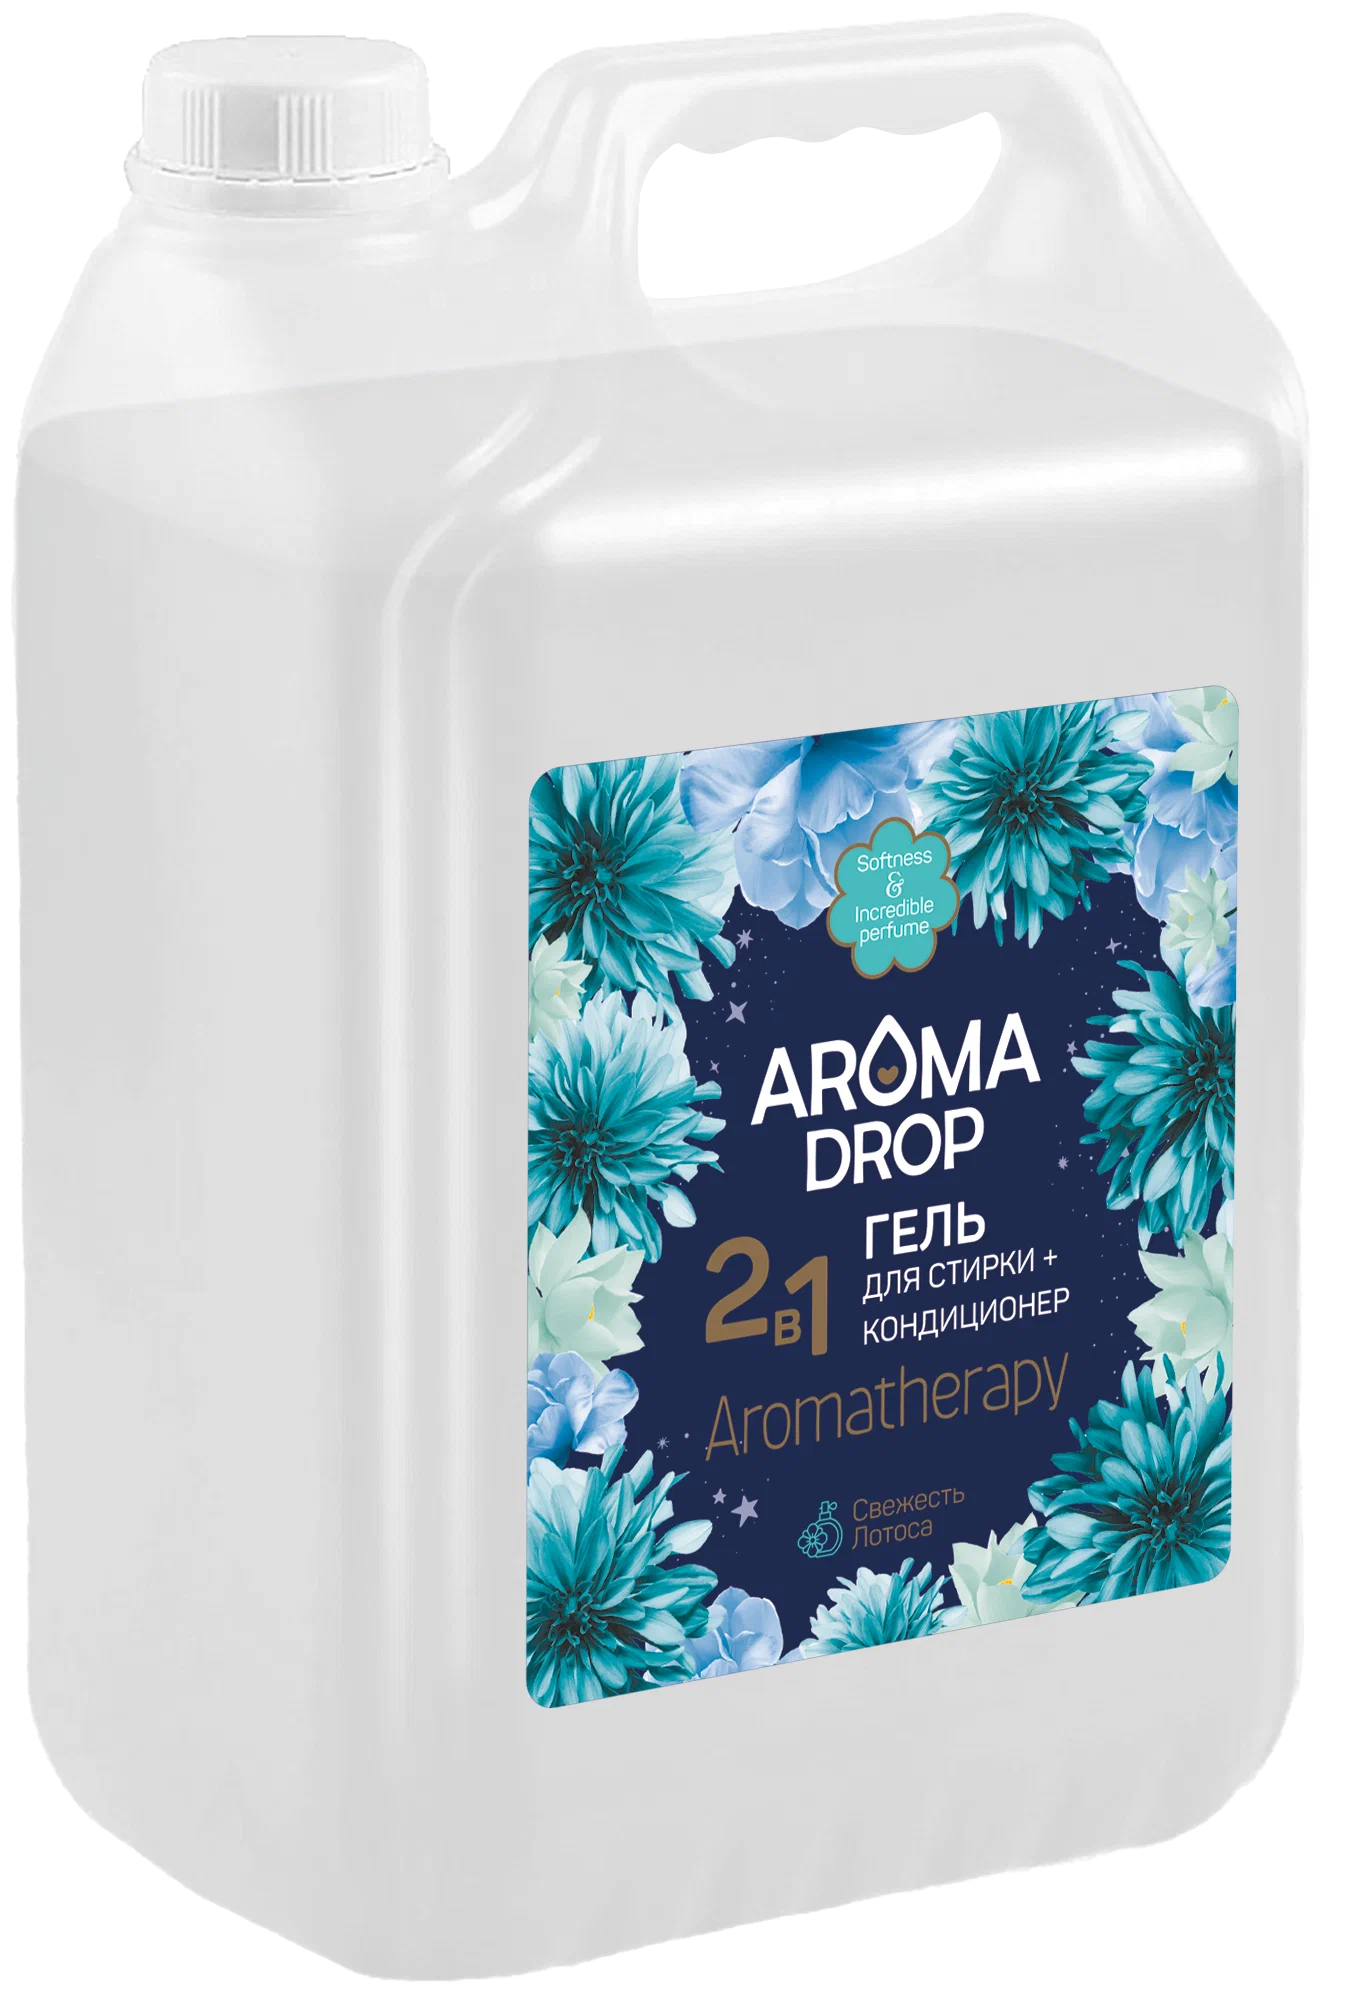 Гель для стирки Aroma Drop Aromatherapy 2 в 1, с кондиционером, свежесть лотоса, 5 л